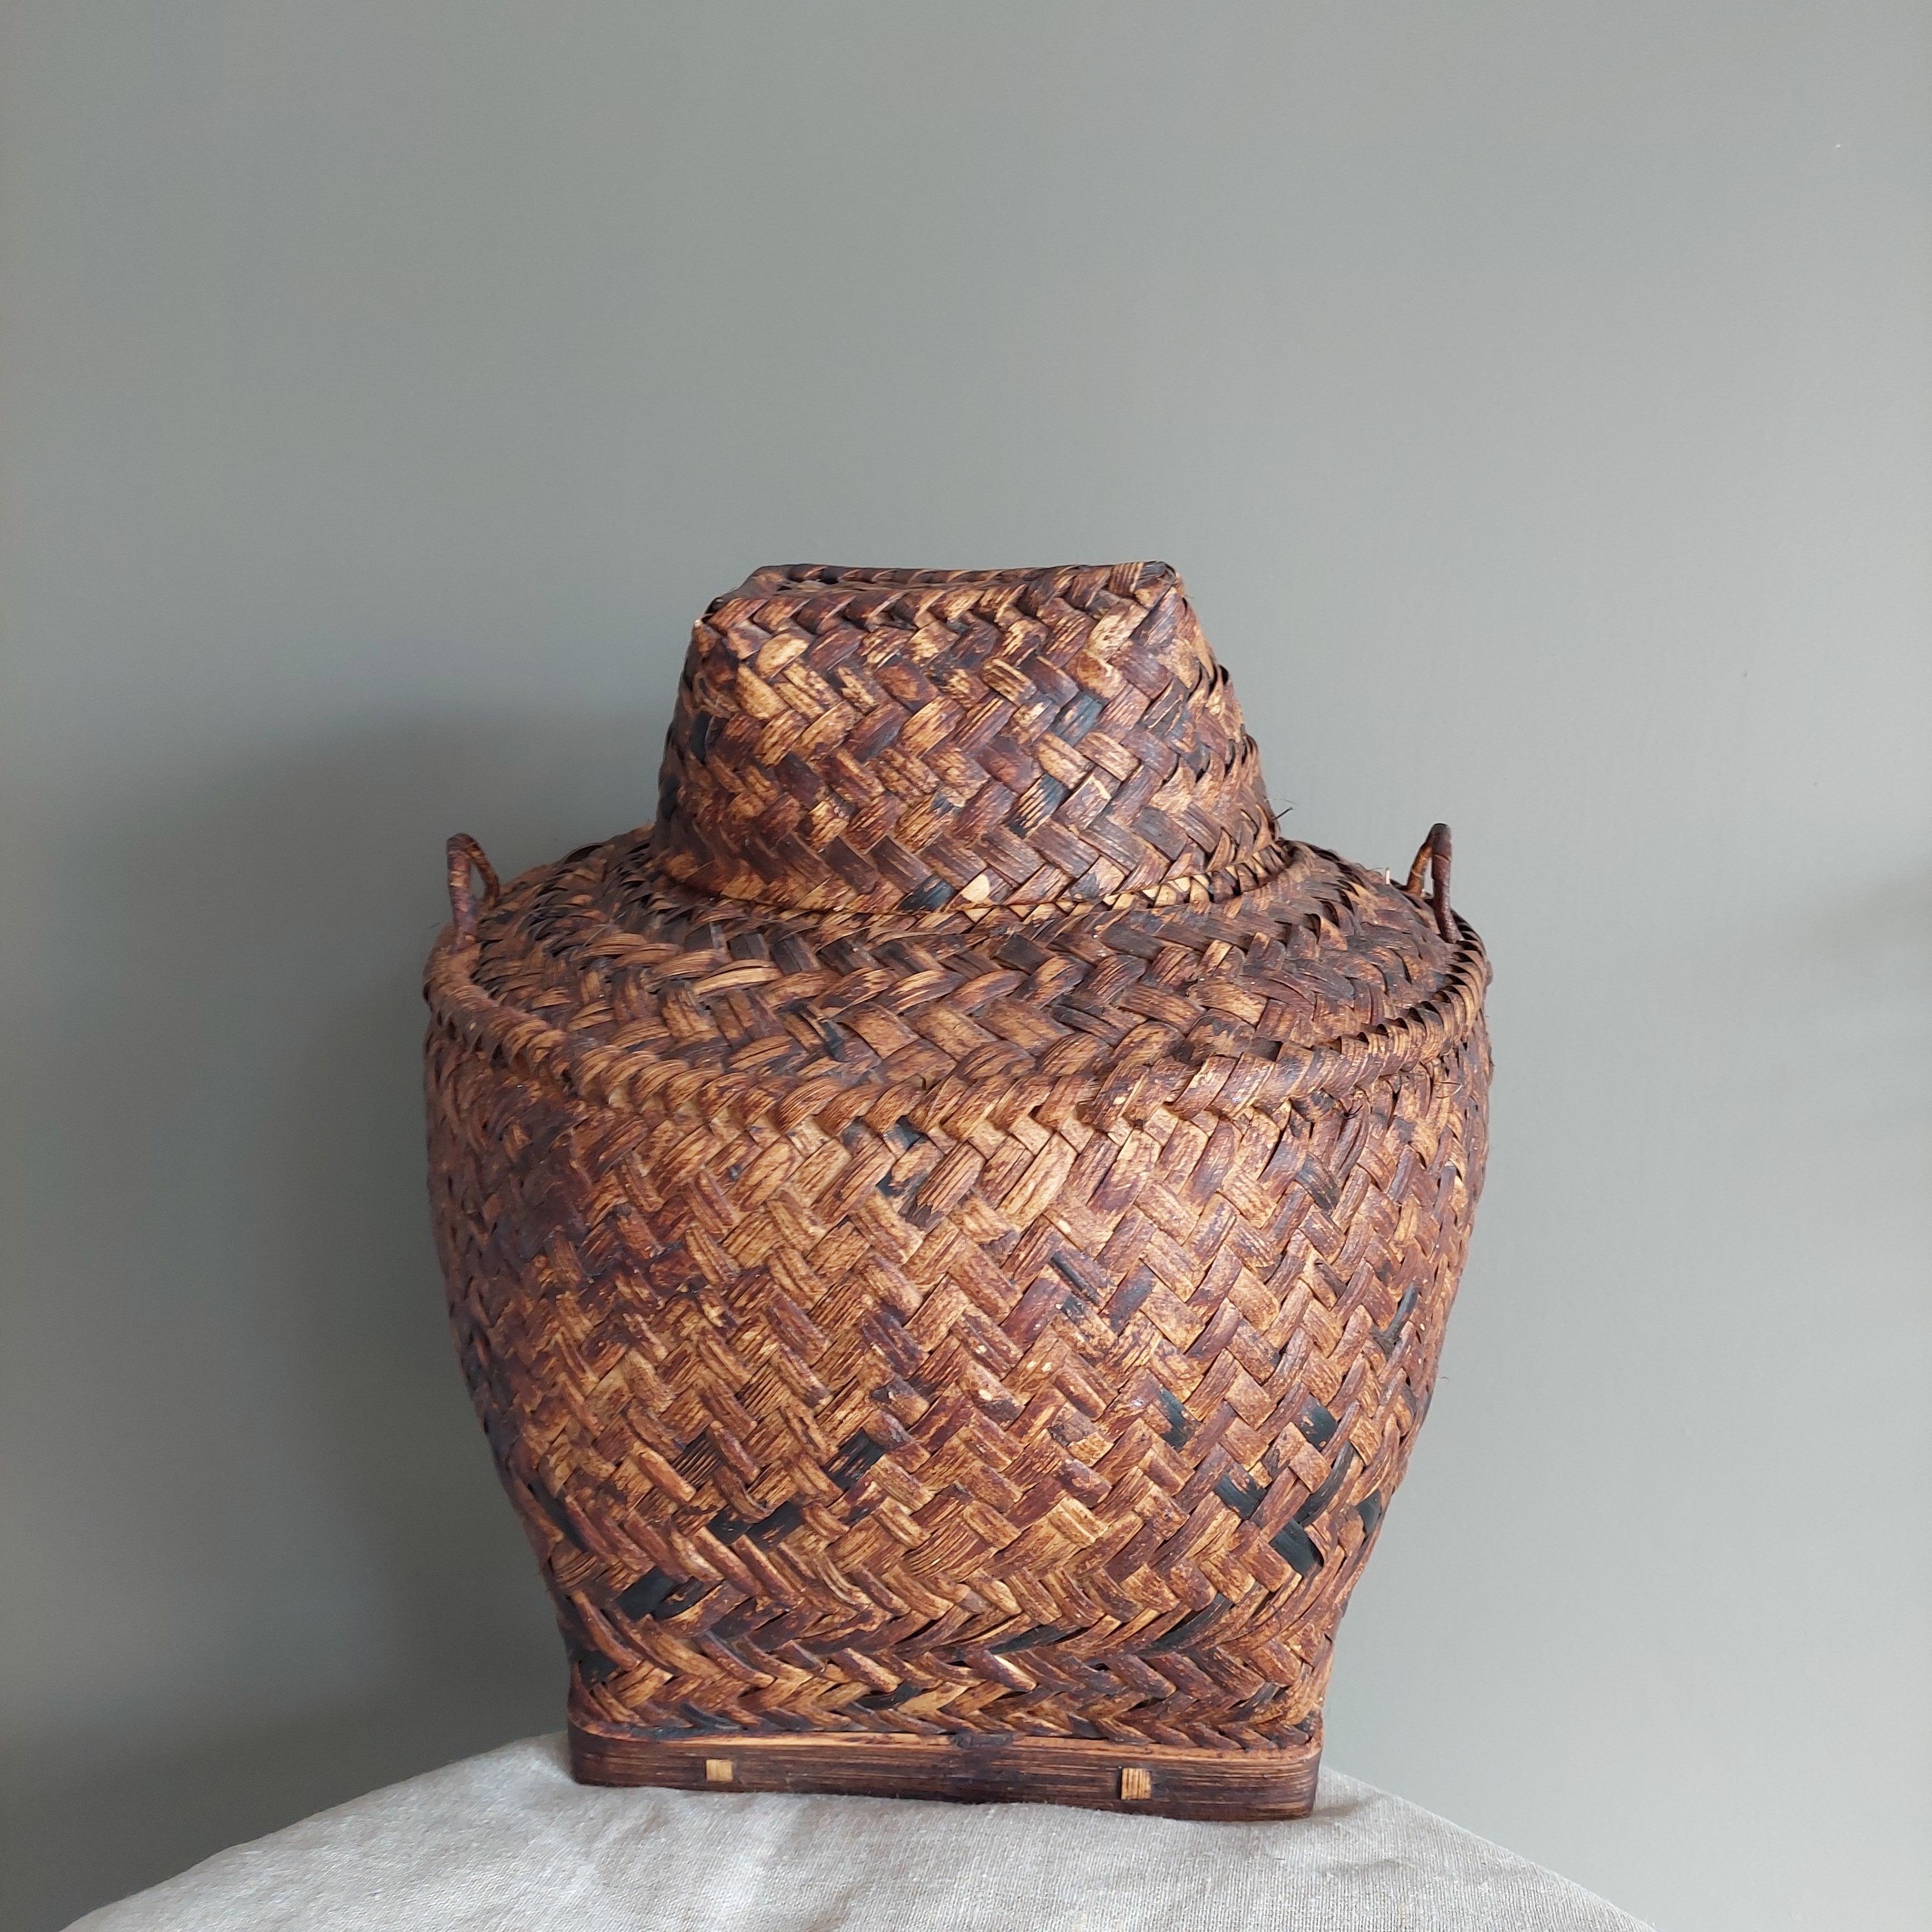 Asiatique Vintage Early 20th Century Asian Woven Rattan Basket With Lid (Panier asiatique en rotin tressé avec couvercle) en vente